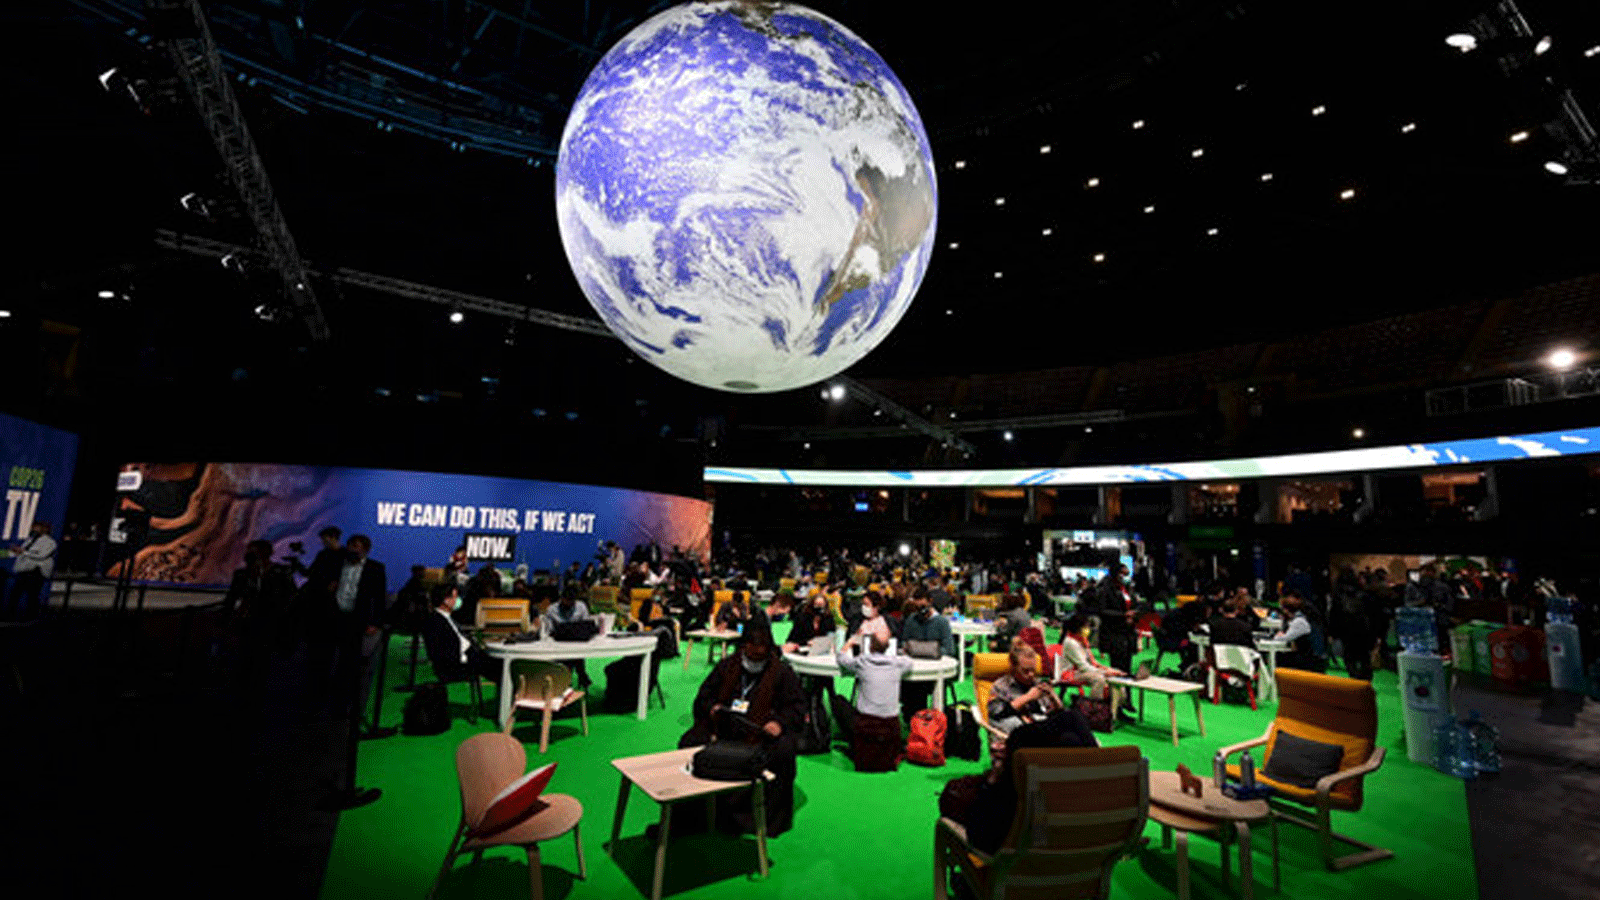 المندوبون يجلسون في منطقة العمل أثناء حضورهم اليوم الثالث من قمة المناخ COP26 للأمم المتحدة في غلاسكو يوم الأربعاء 3 تشرين الثاني/ نوفمبر 2021